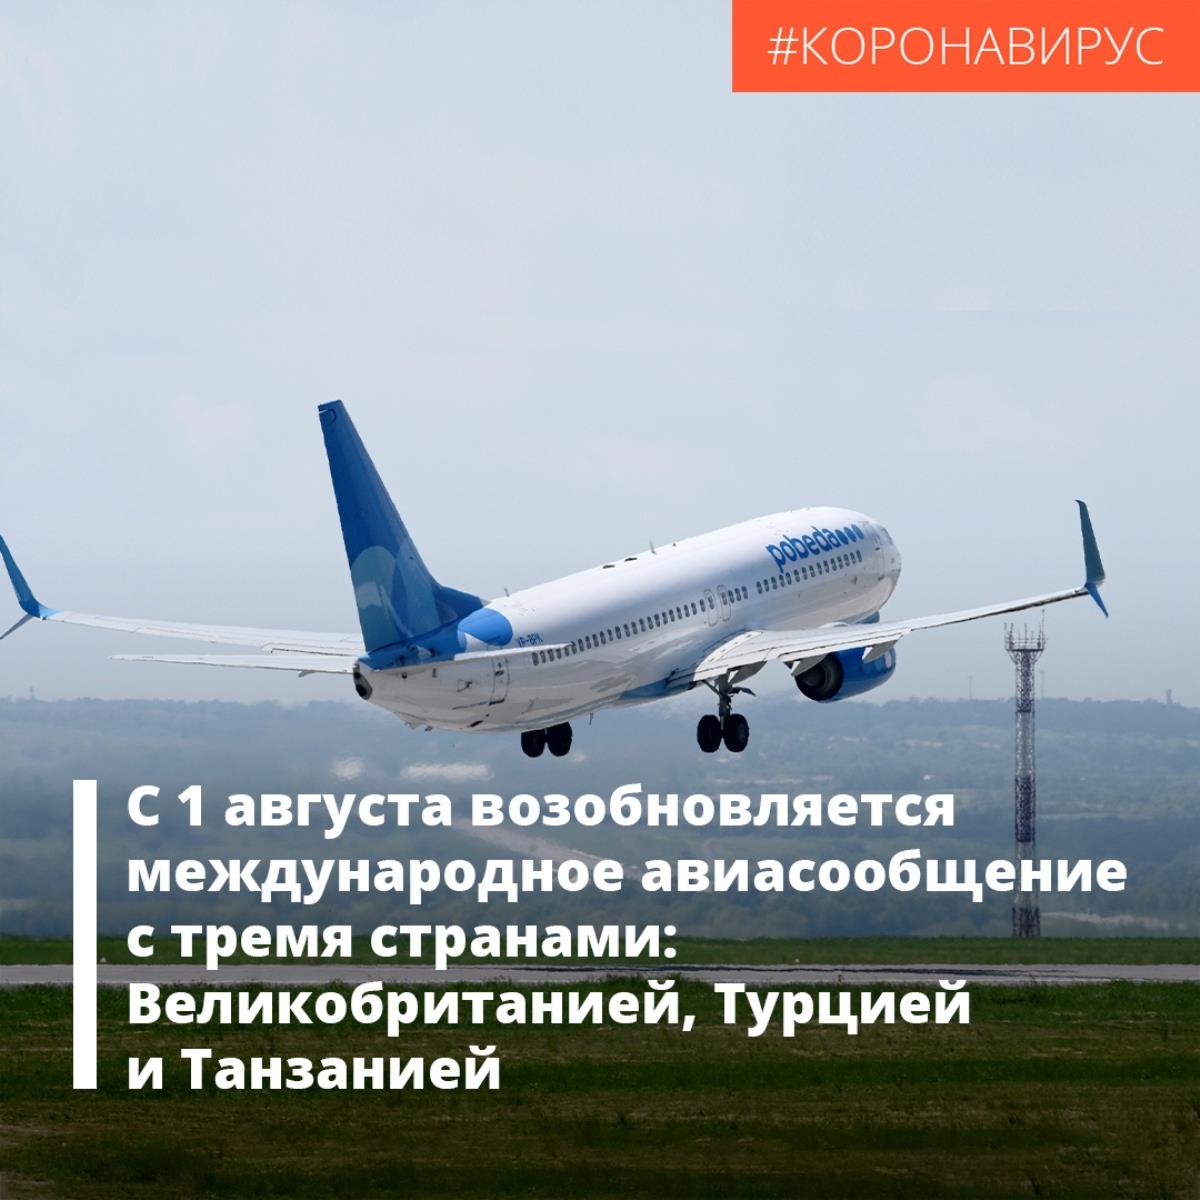 Россия с 1 августа возобновляет международное авиасообщение 